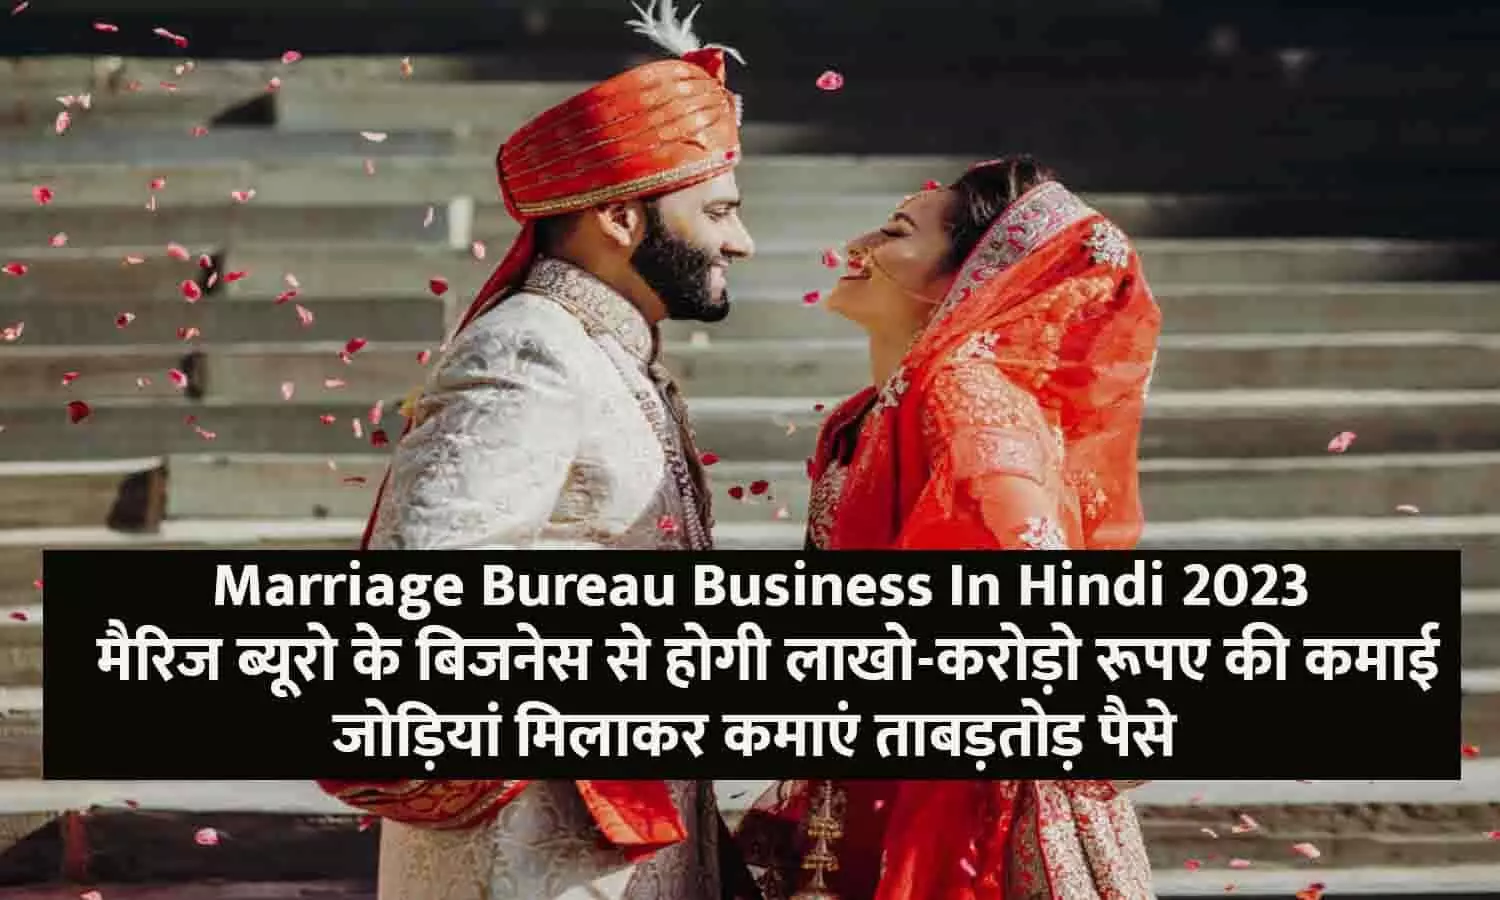 Marriage Bureau Business In Hindi 2023: मैरिज ब्यूरो के बिजनेस से होगी लाखो-करोड़ो रूपए की कमाई, जोड़ियां मिलाकर कमाएं ताबड़तोड़ पैसे